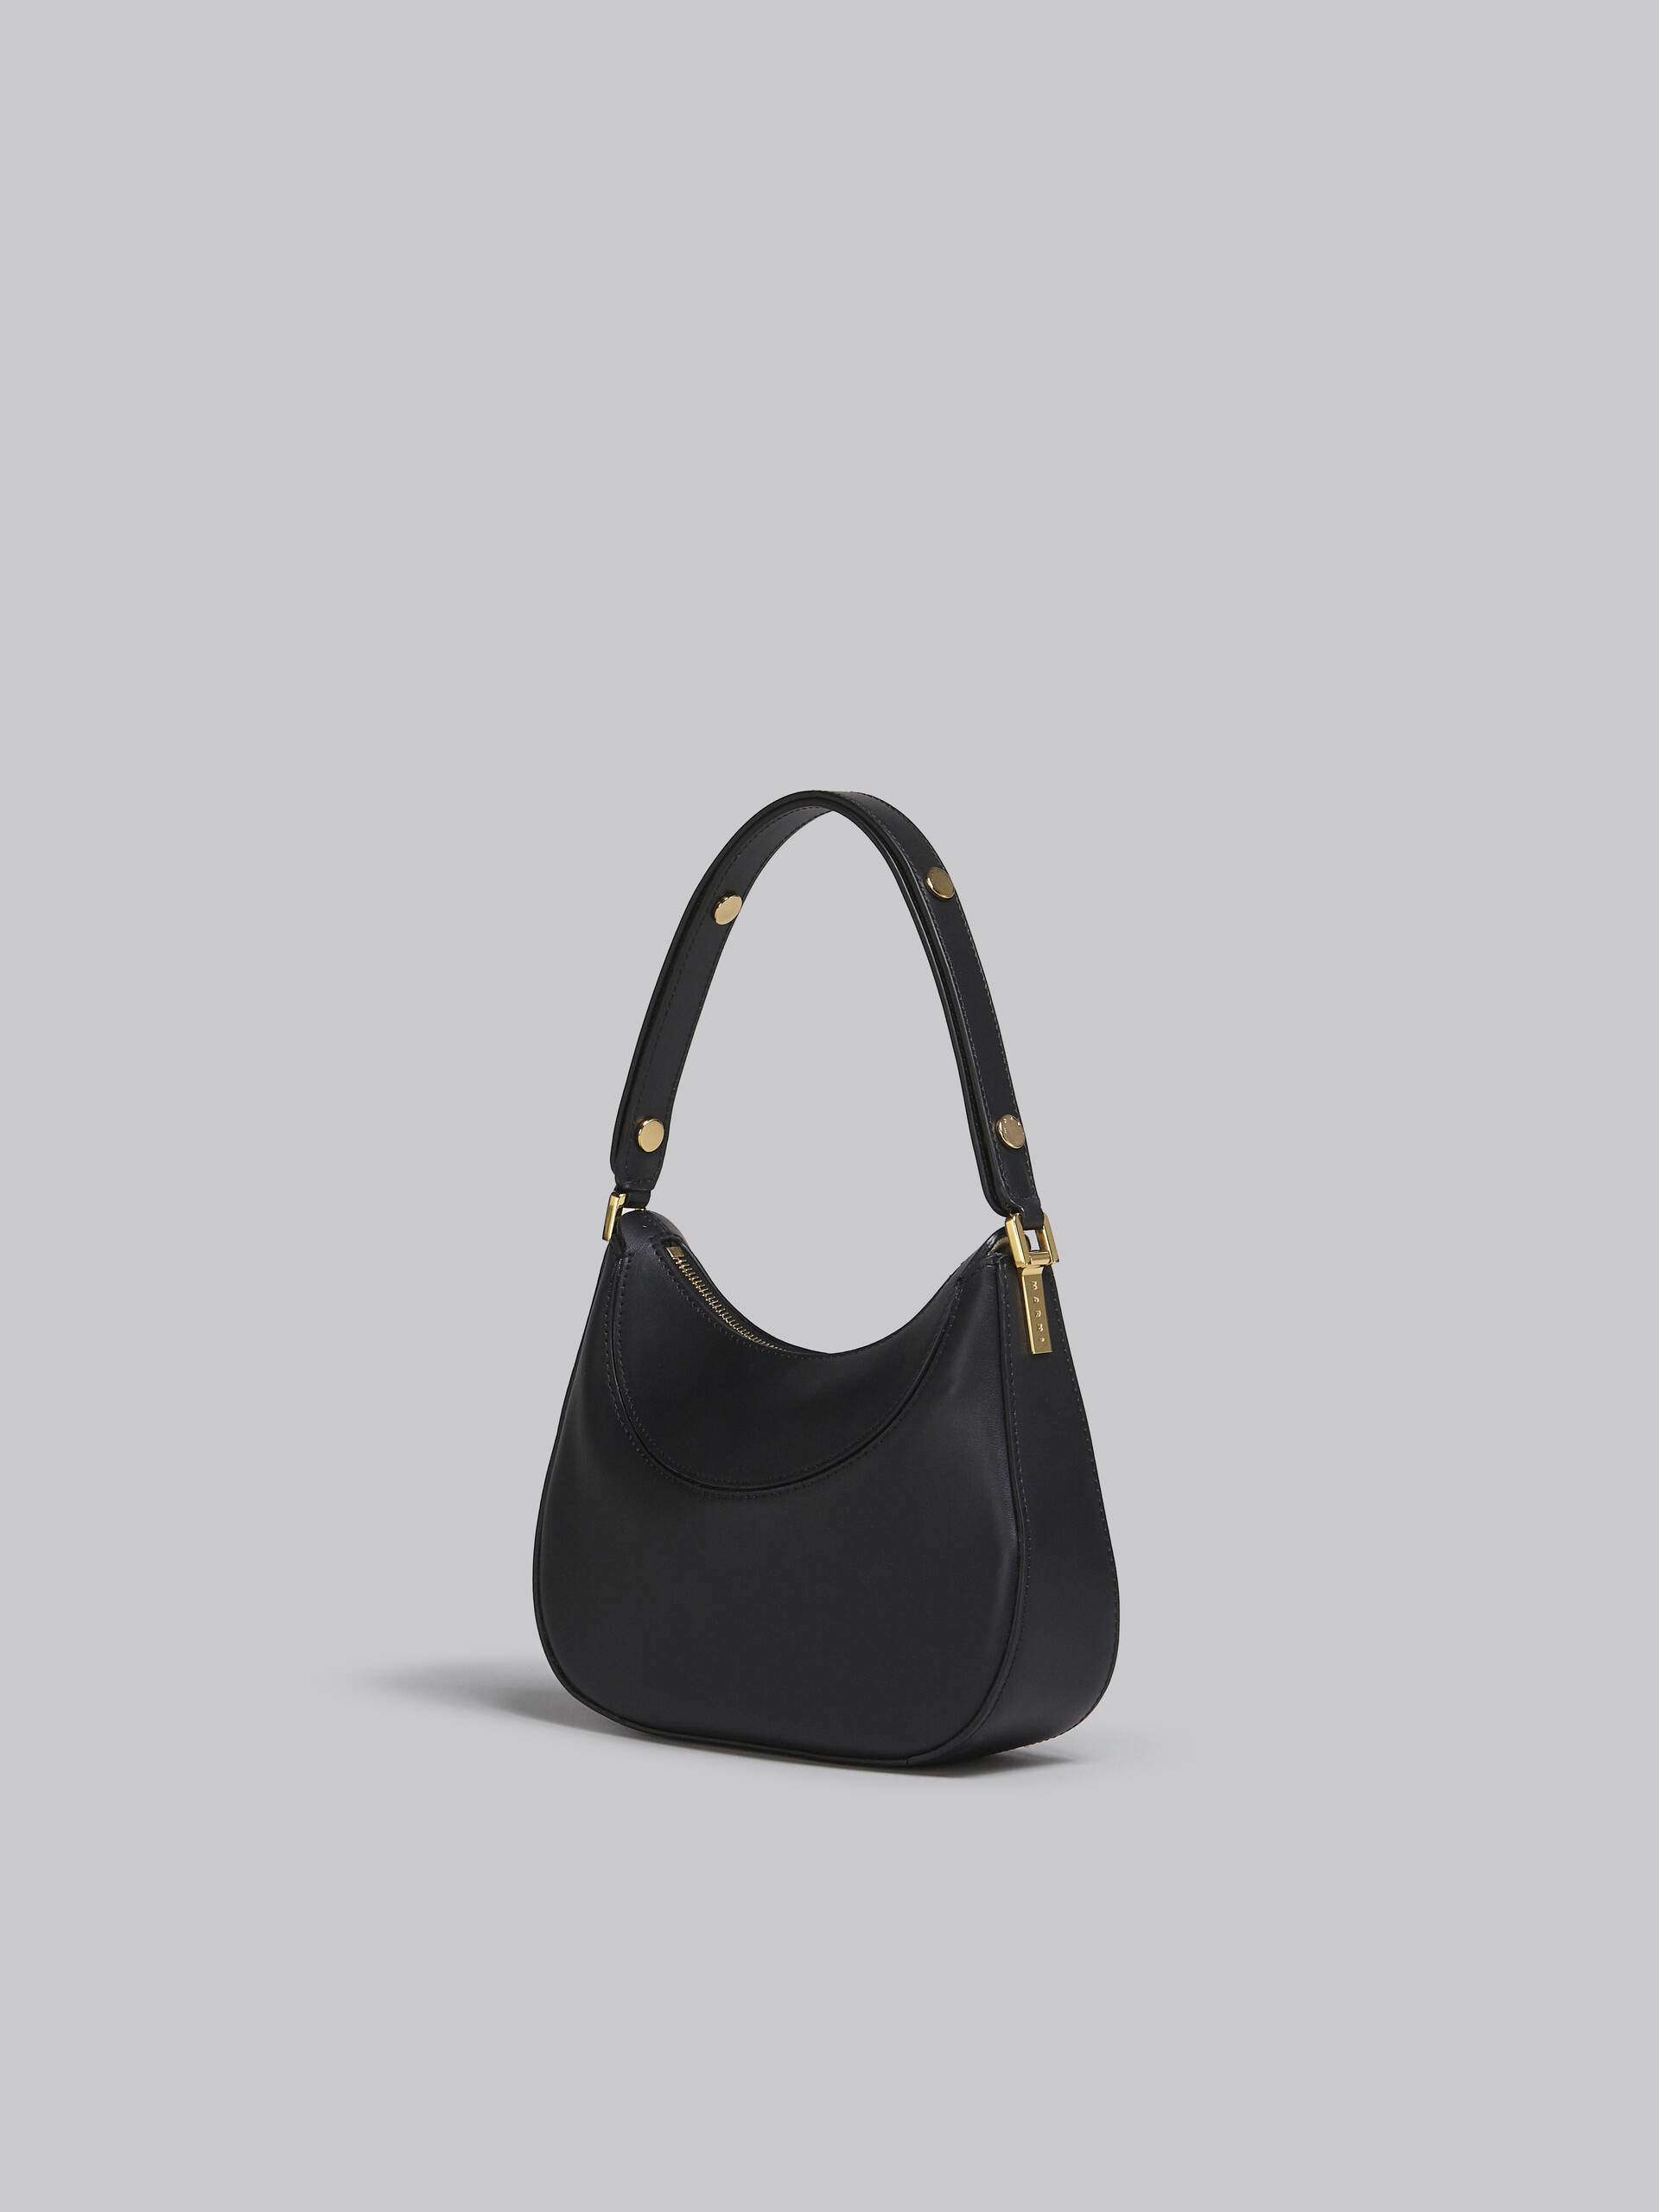 Milano mini bag in black leather - Handbag - Image 3